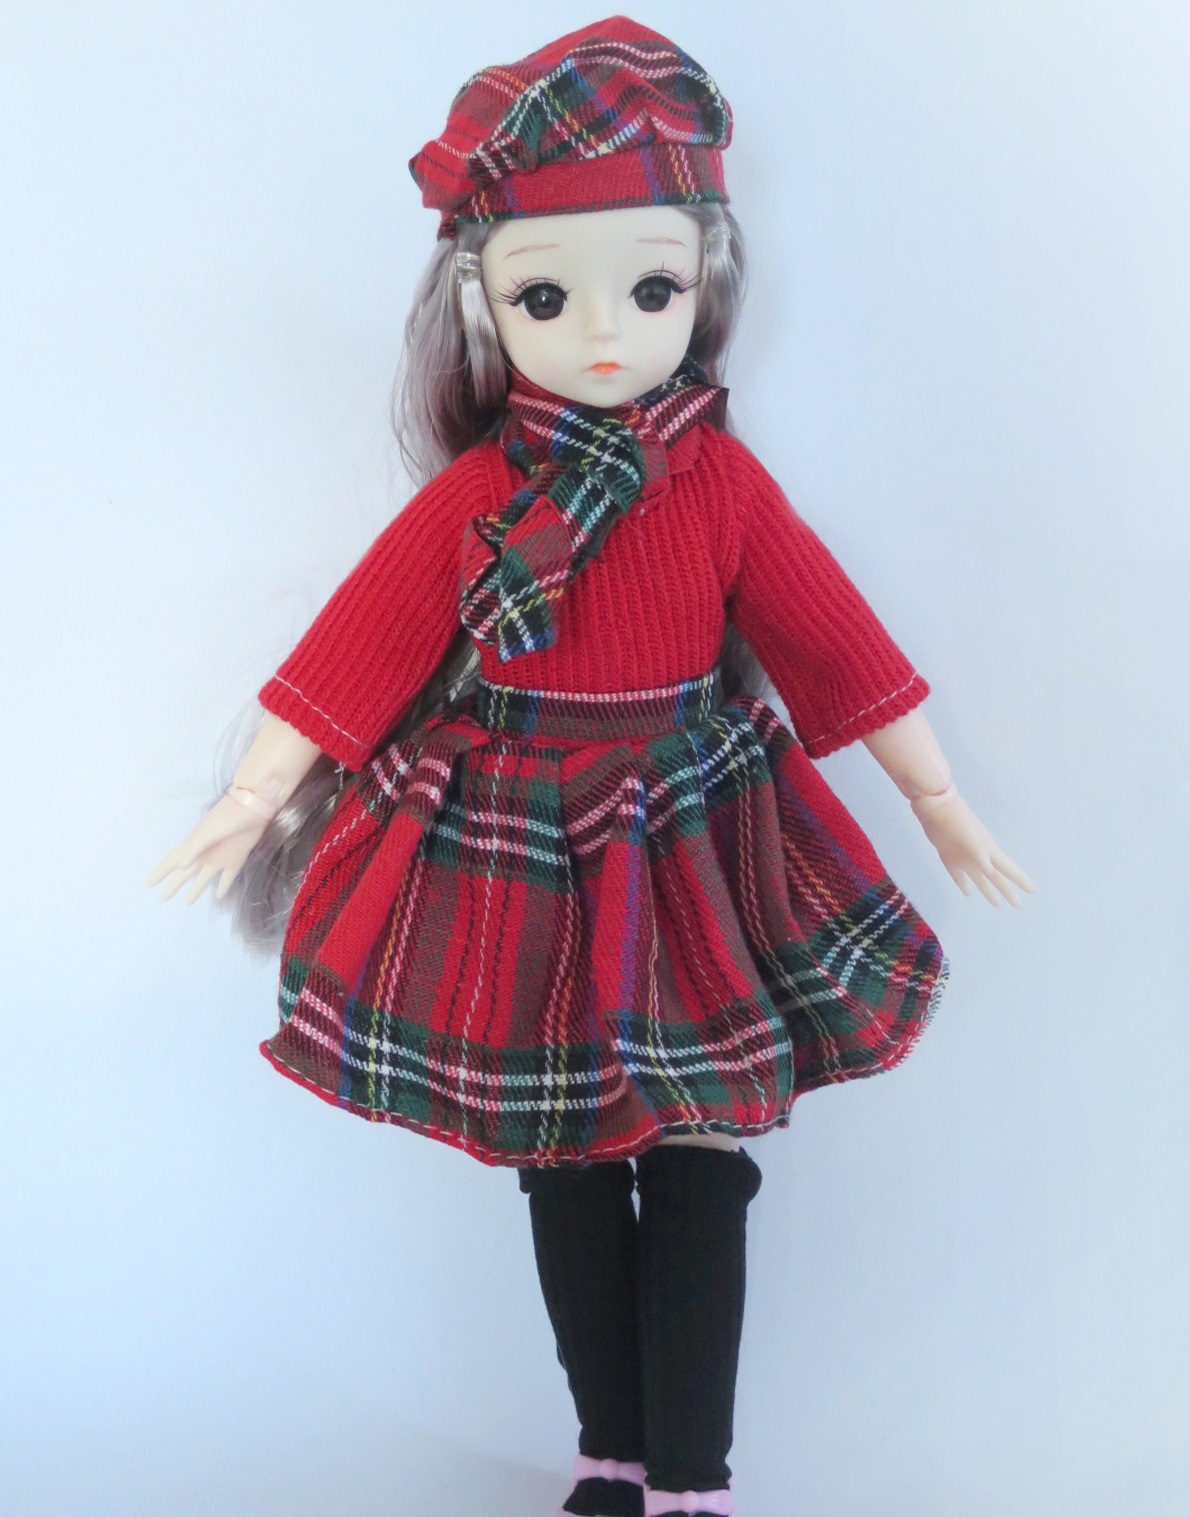 เสื้อผ้าตุ๊กตาเด็ก BJD 1:4 สำหรับตุ๊กตาความสูง 30cm (Fat Body) (ไม่รวมตุ๊กตาและรองเท้า)